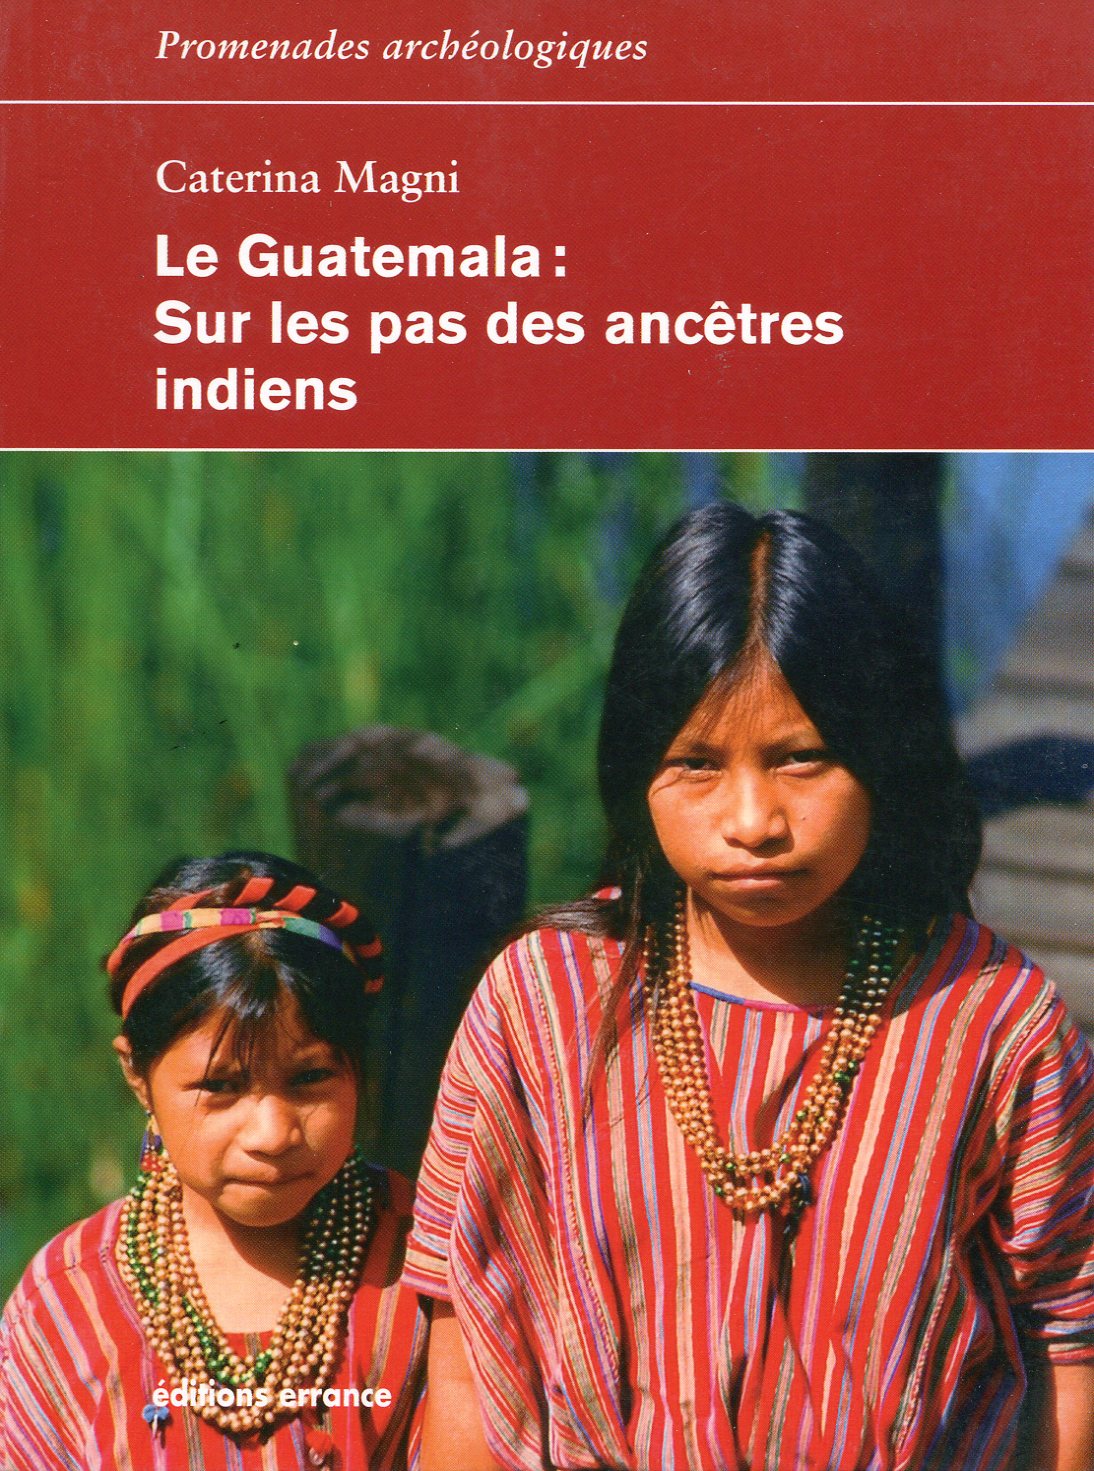 Le Guatemala. Sur les pas des ancêtres indiens, 2017, 240 p.